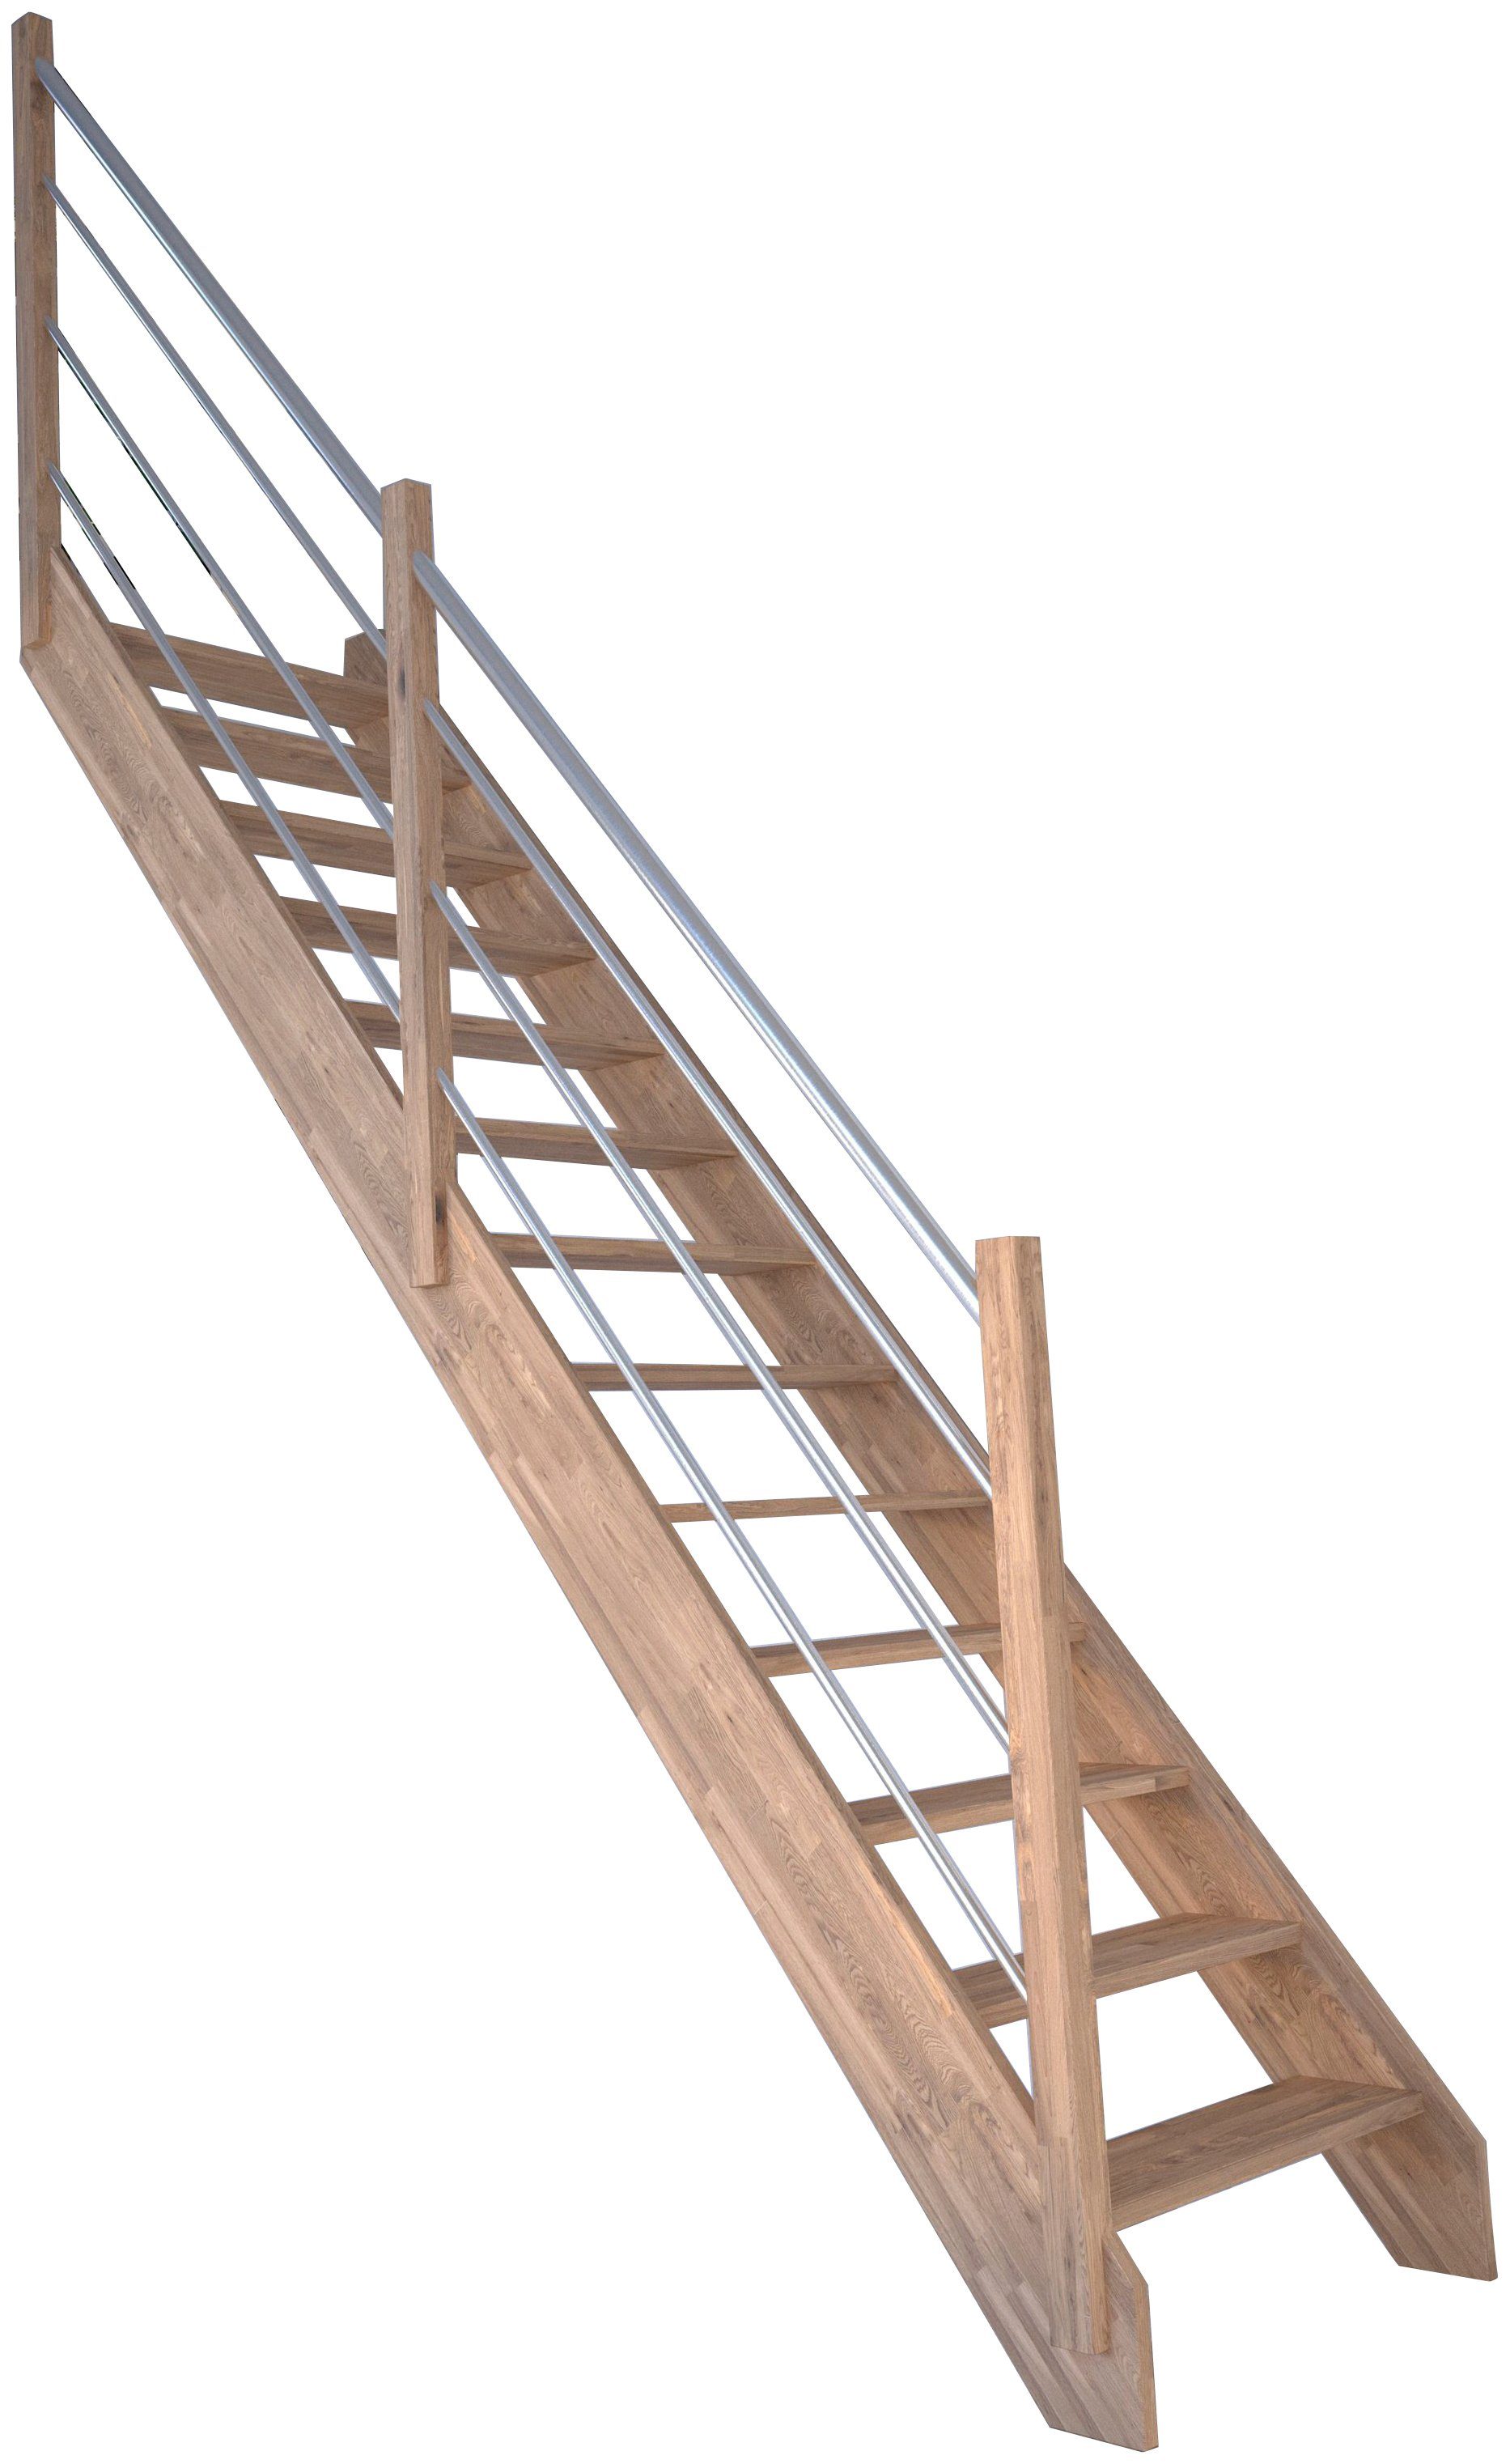 Starwood Raumspartreppe Massivholz Rhodos, Holz-Edelstahl Links, für Geschosshöhen bis 300 cm, Stufen offen, Durchgehende Wangenteile